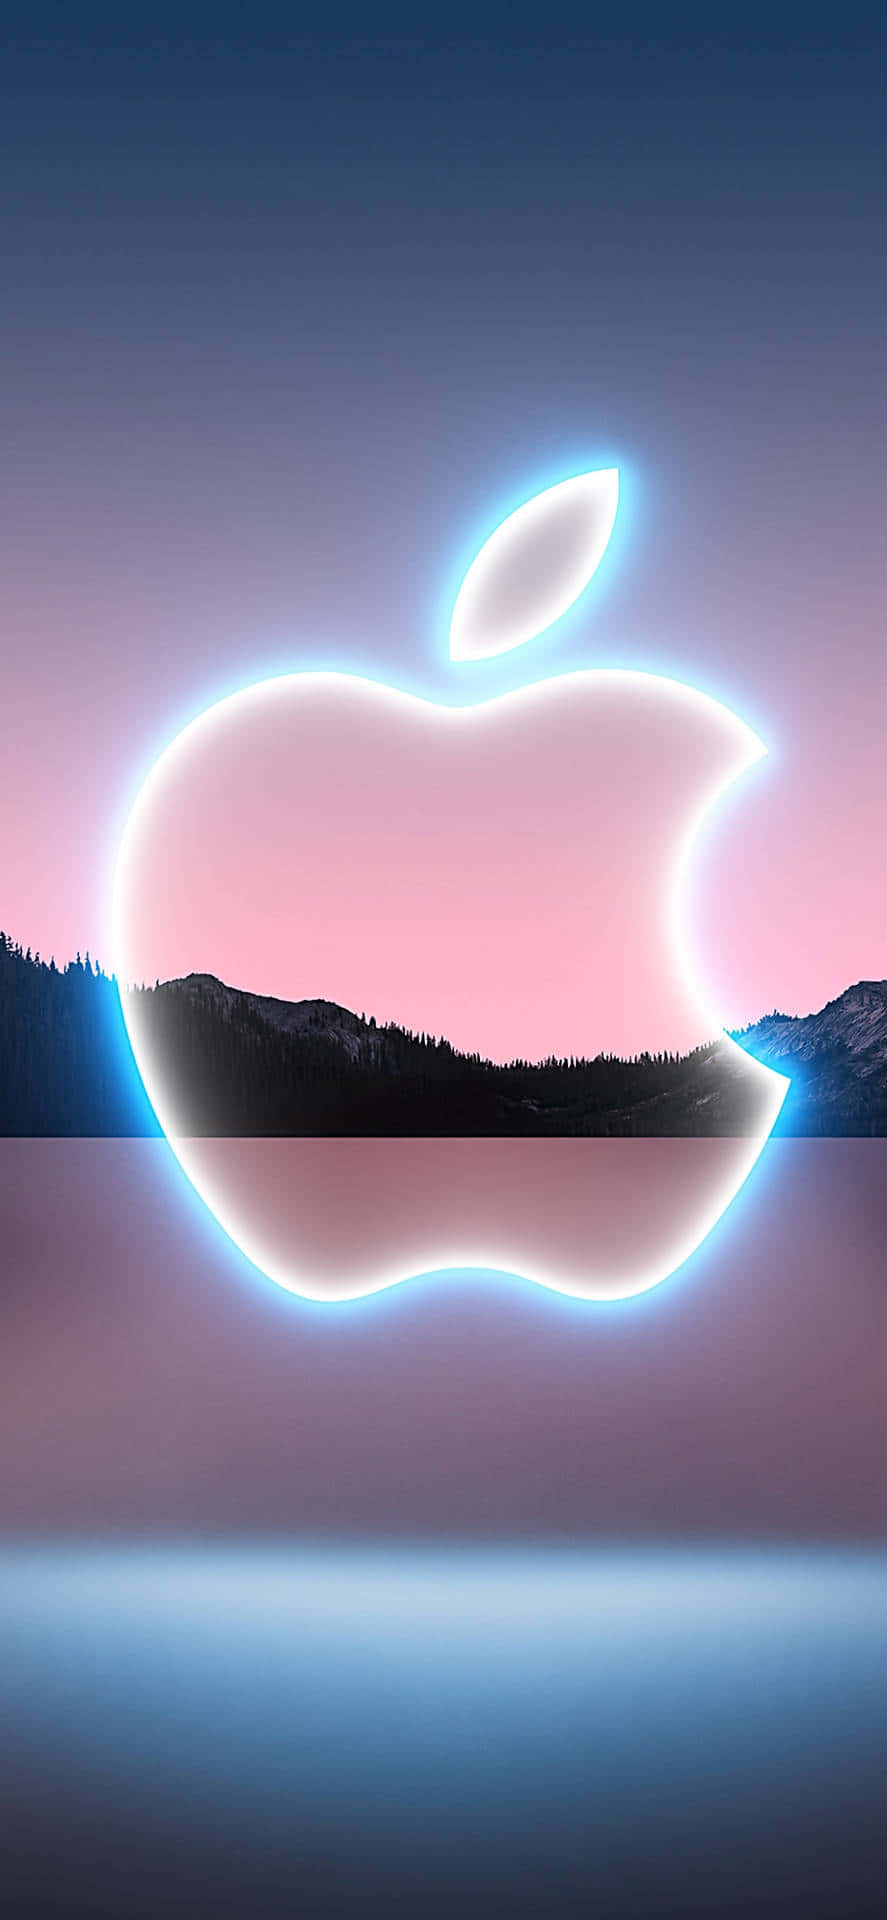 Fundode Tela Do Logo Brilhante Da Apple No Pixel 3.